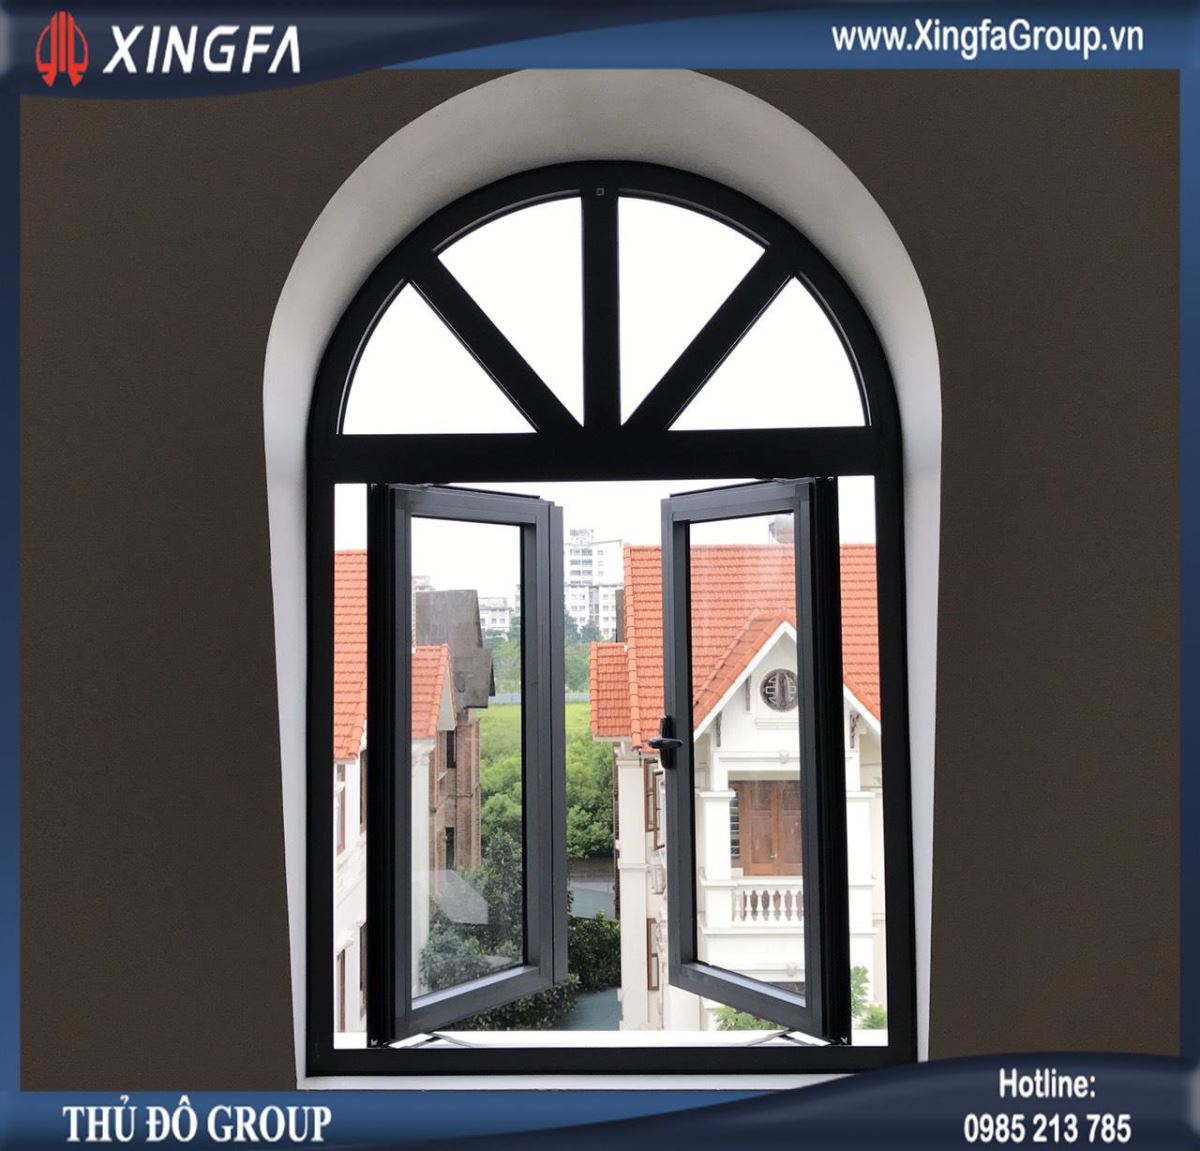 Mẫu cửa sổ nhôm Xingfa chia thêm đố uốn mái vòm cong & dùng kính hộp 2 lớp có nan trang trí bên trong